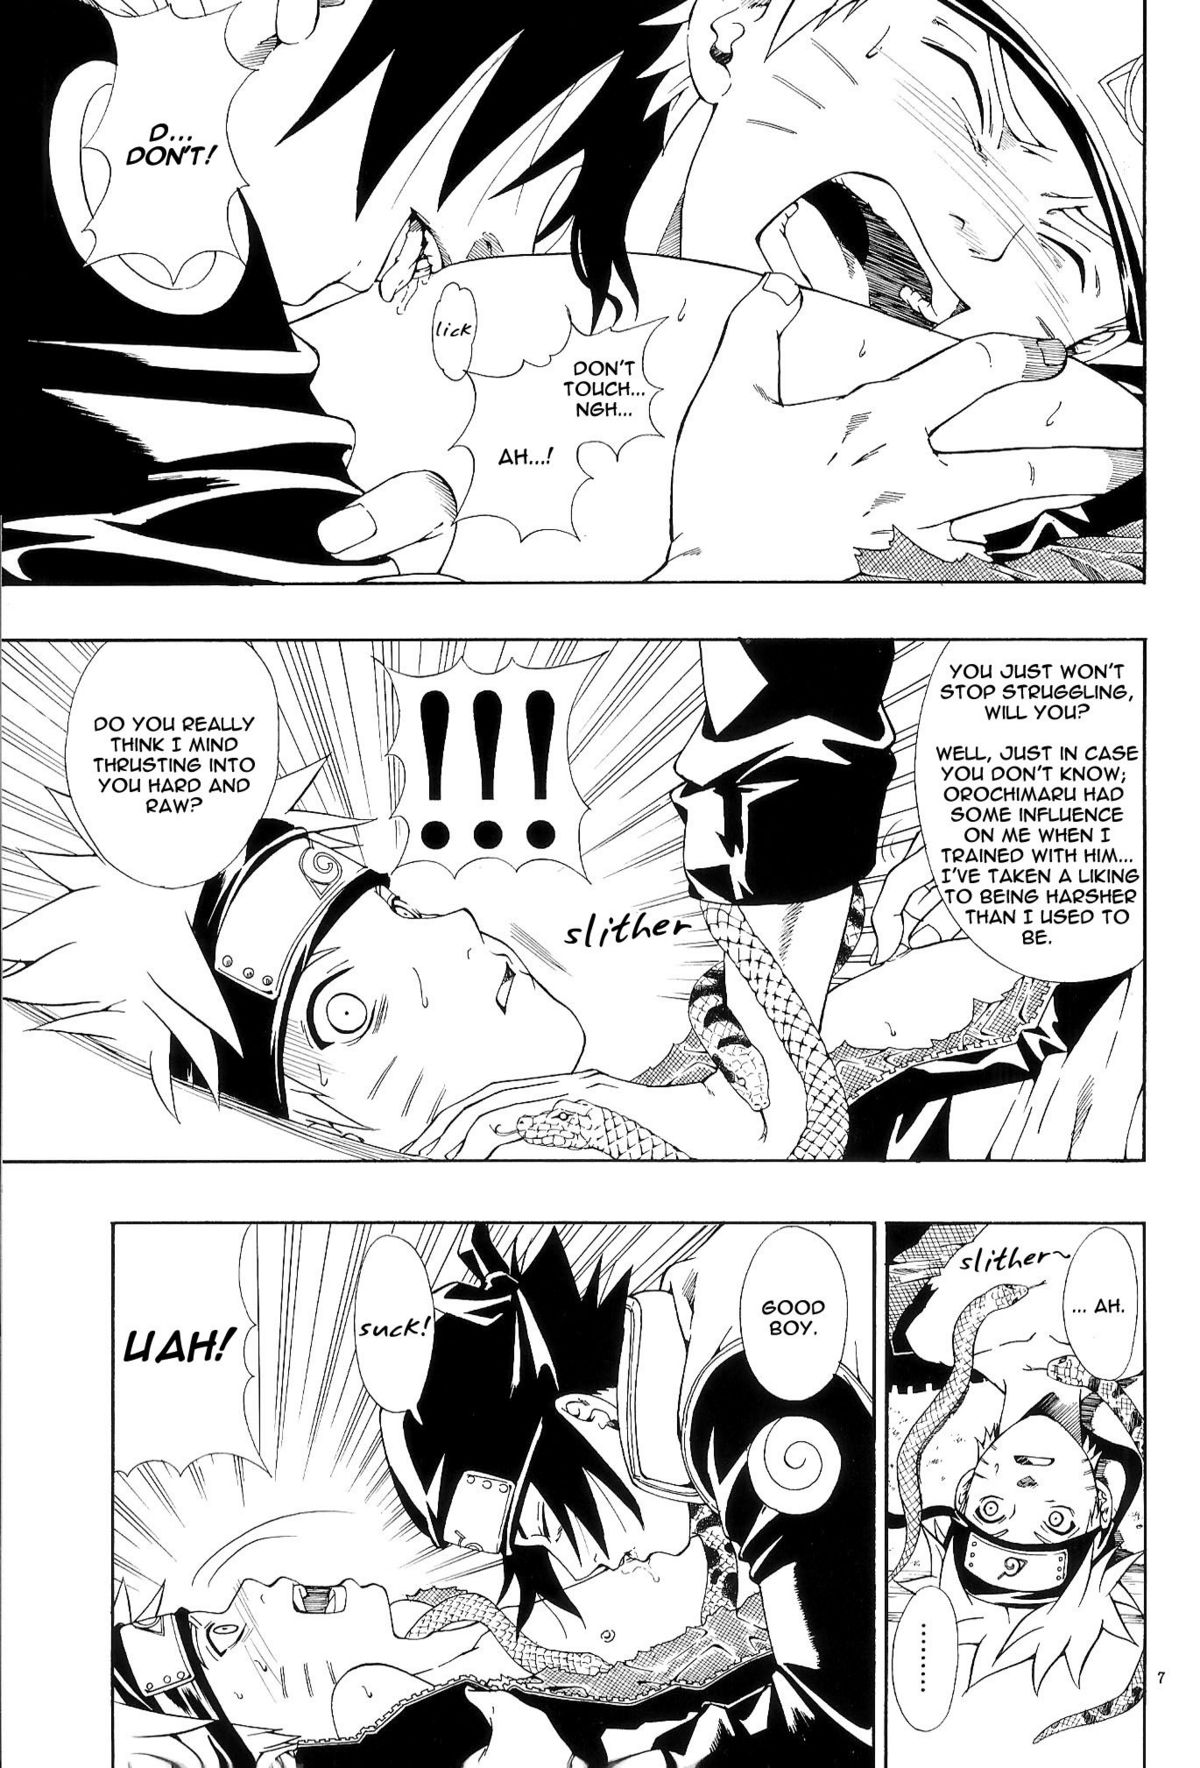 ERO ERO²: Volume 1.5  (NARUTO) [Sasuke X Naruto] YAOI -ENG- page 6 full